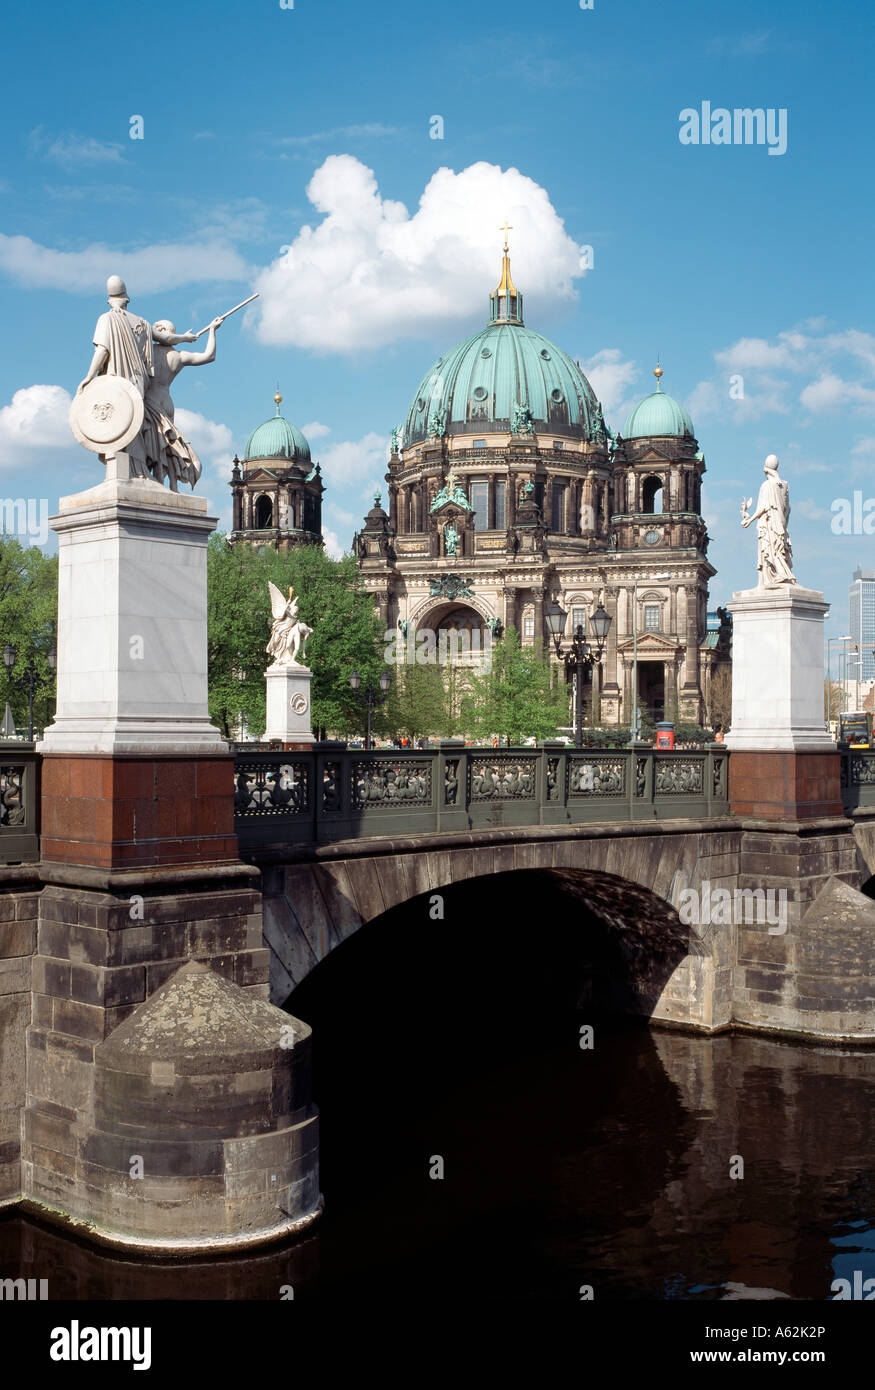 Berlín, Dom, Blick von der Schloßbrücke Foto de stock